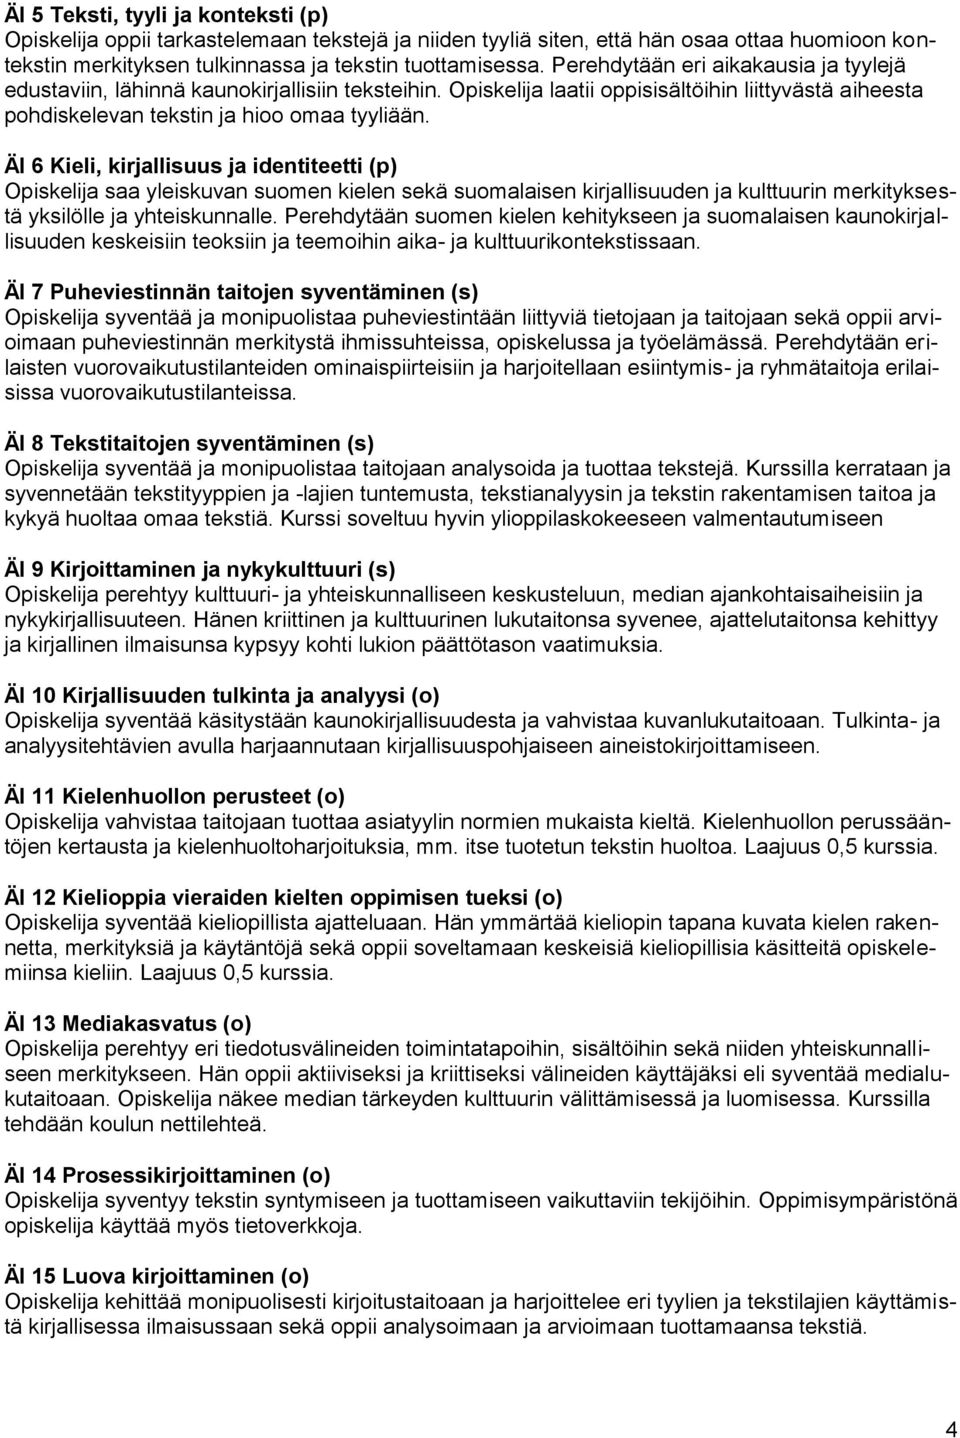 ÄI 6 Kieli, kirjallisuus ja identiteetti (p) Opiskelija saa yleiskuvan suomen kielen sekä suomalaisen kirjallisuuden ja kulttuurin merkityksestä yksilölle ja yhteiskunnalle.